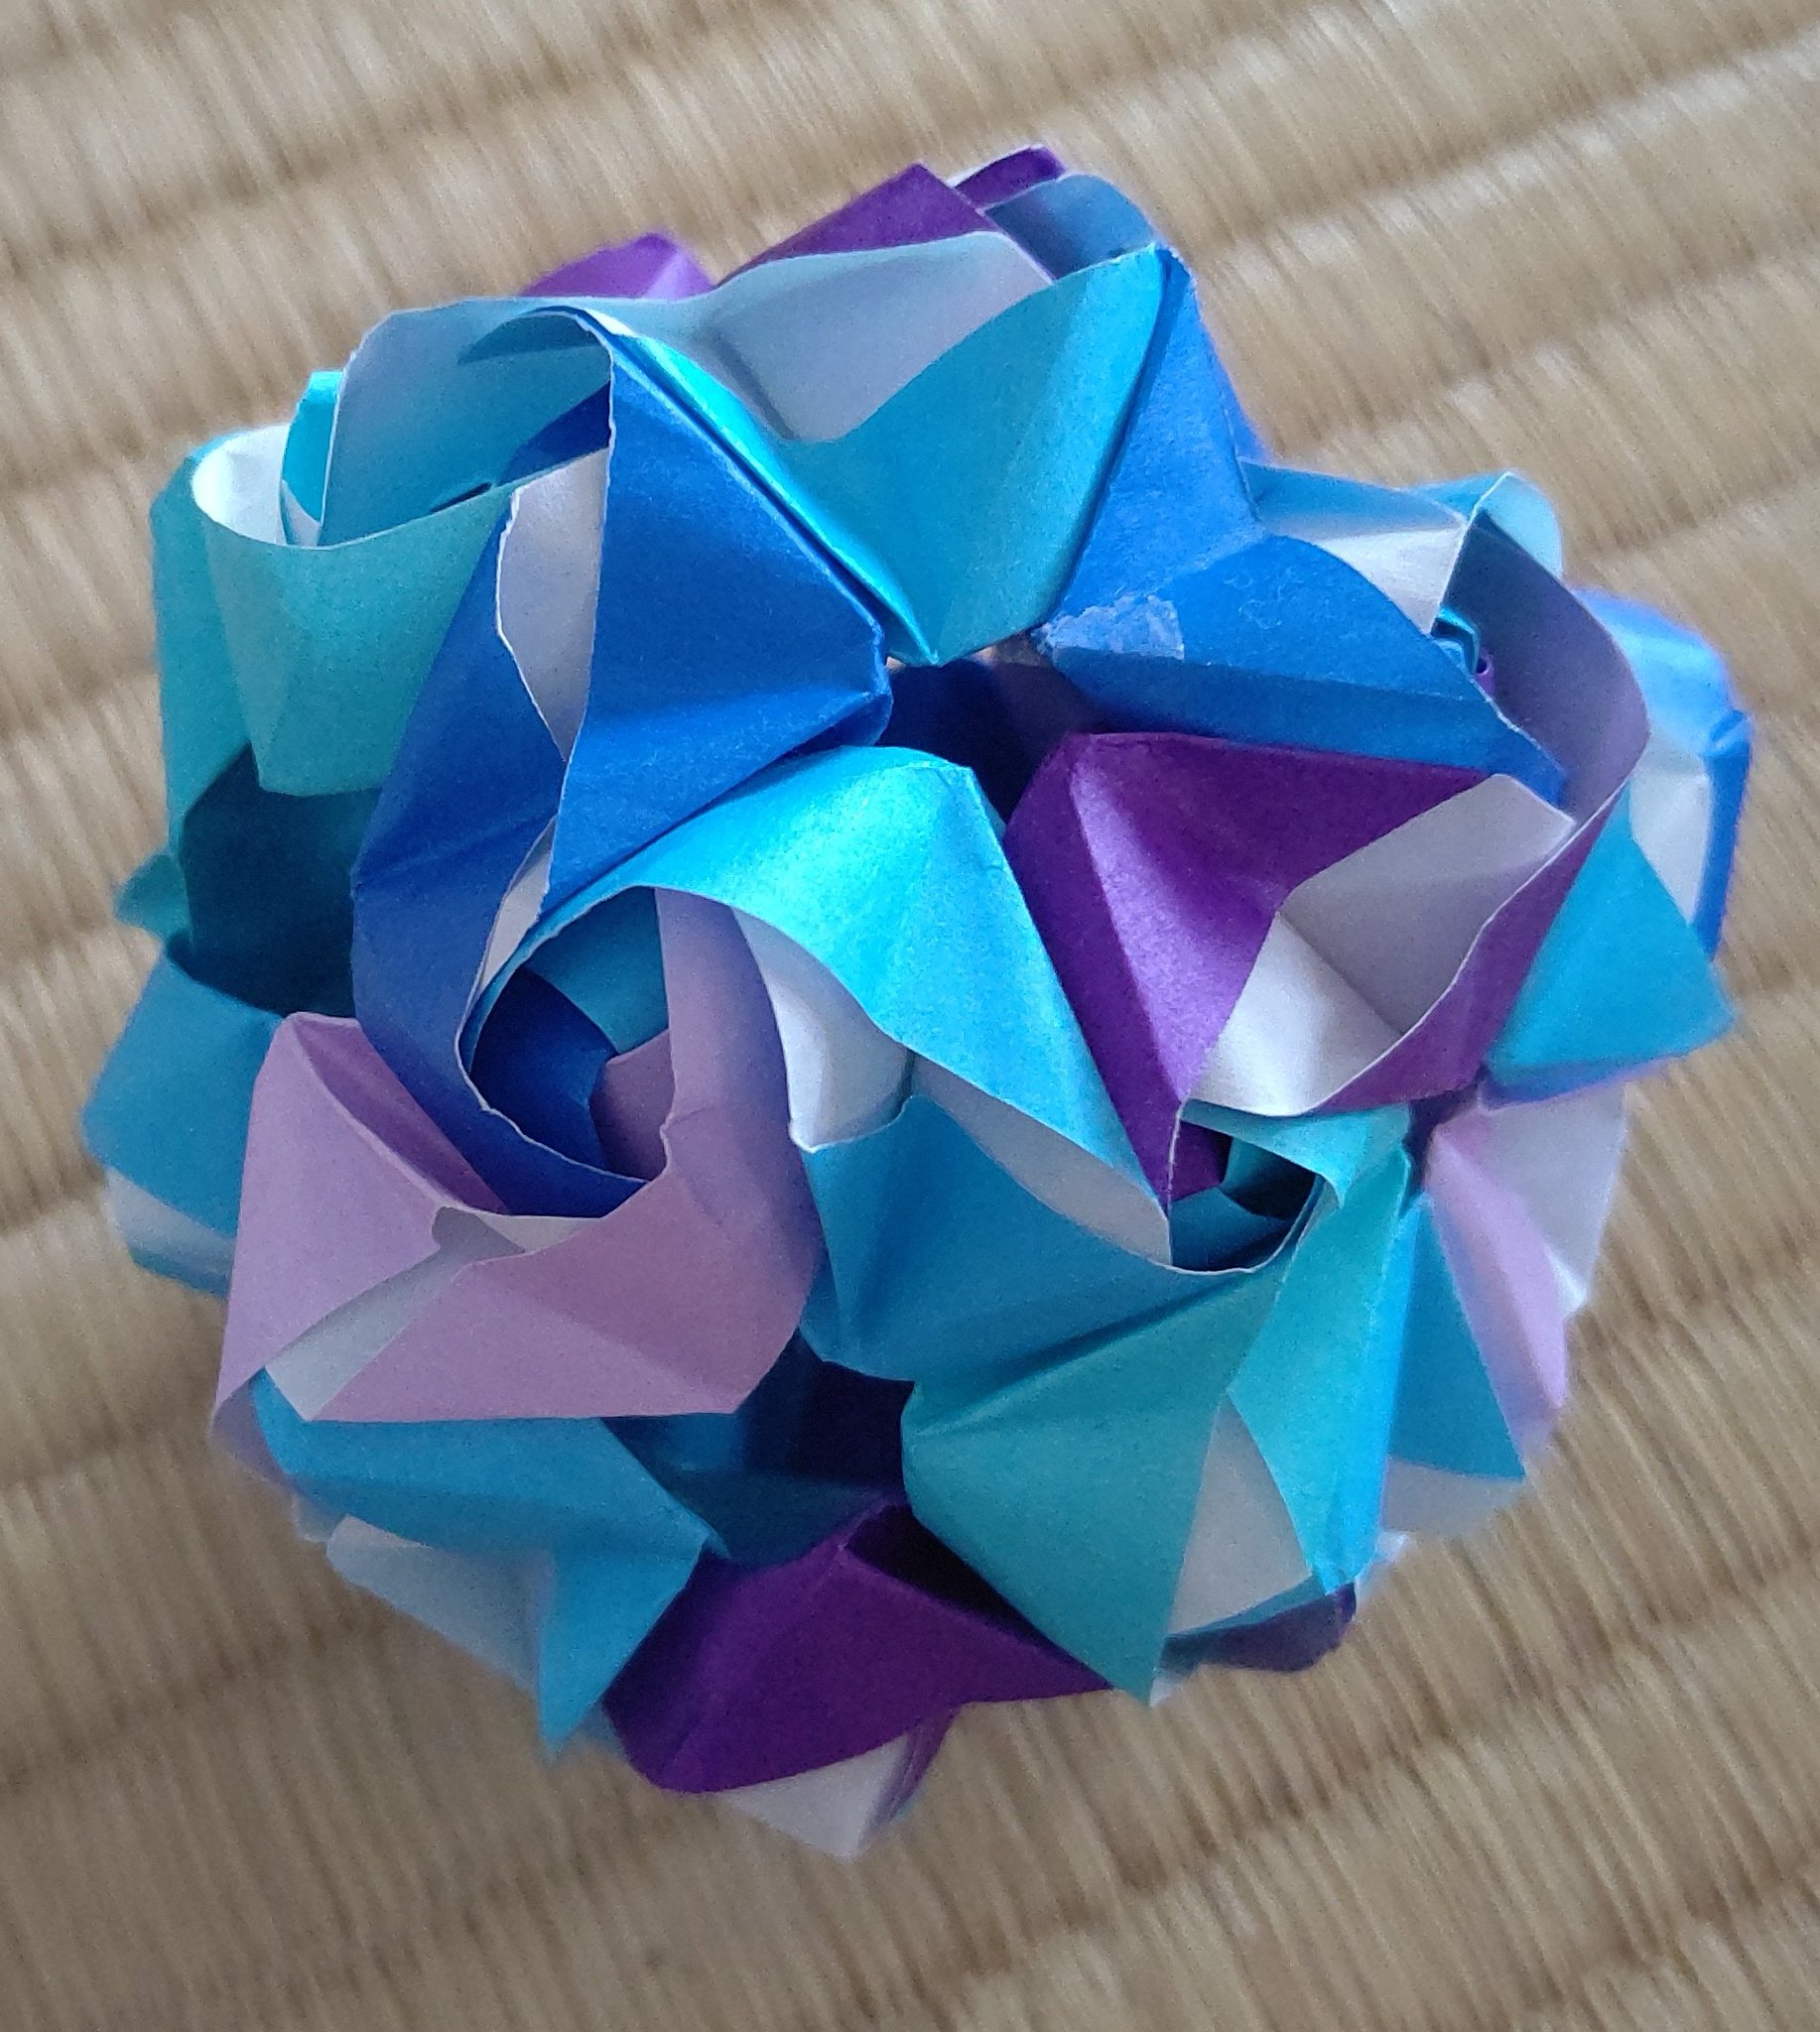 すもも على تويتر 紫陽花くす玉 二種類作ったけど なかなか難しいな ユニット折り紙 くす玉